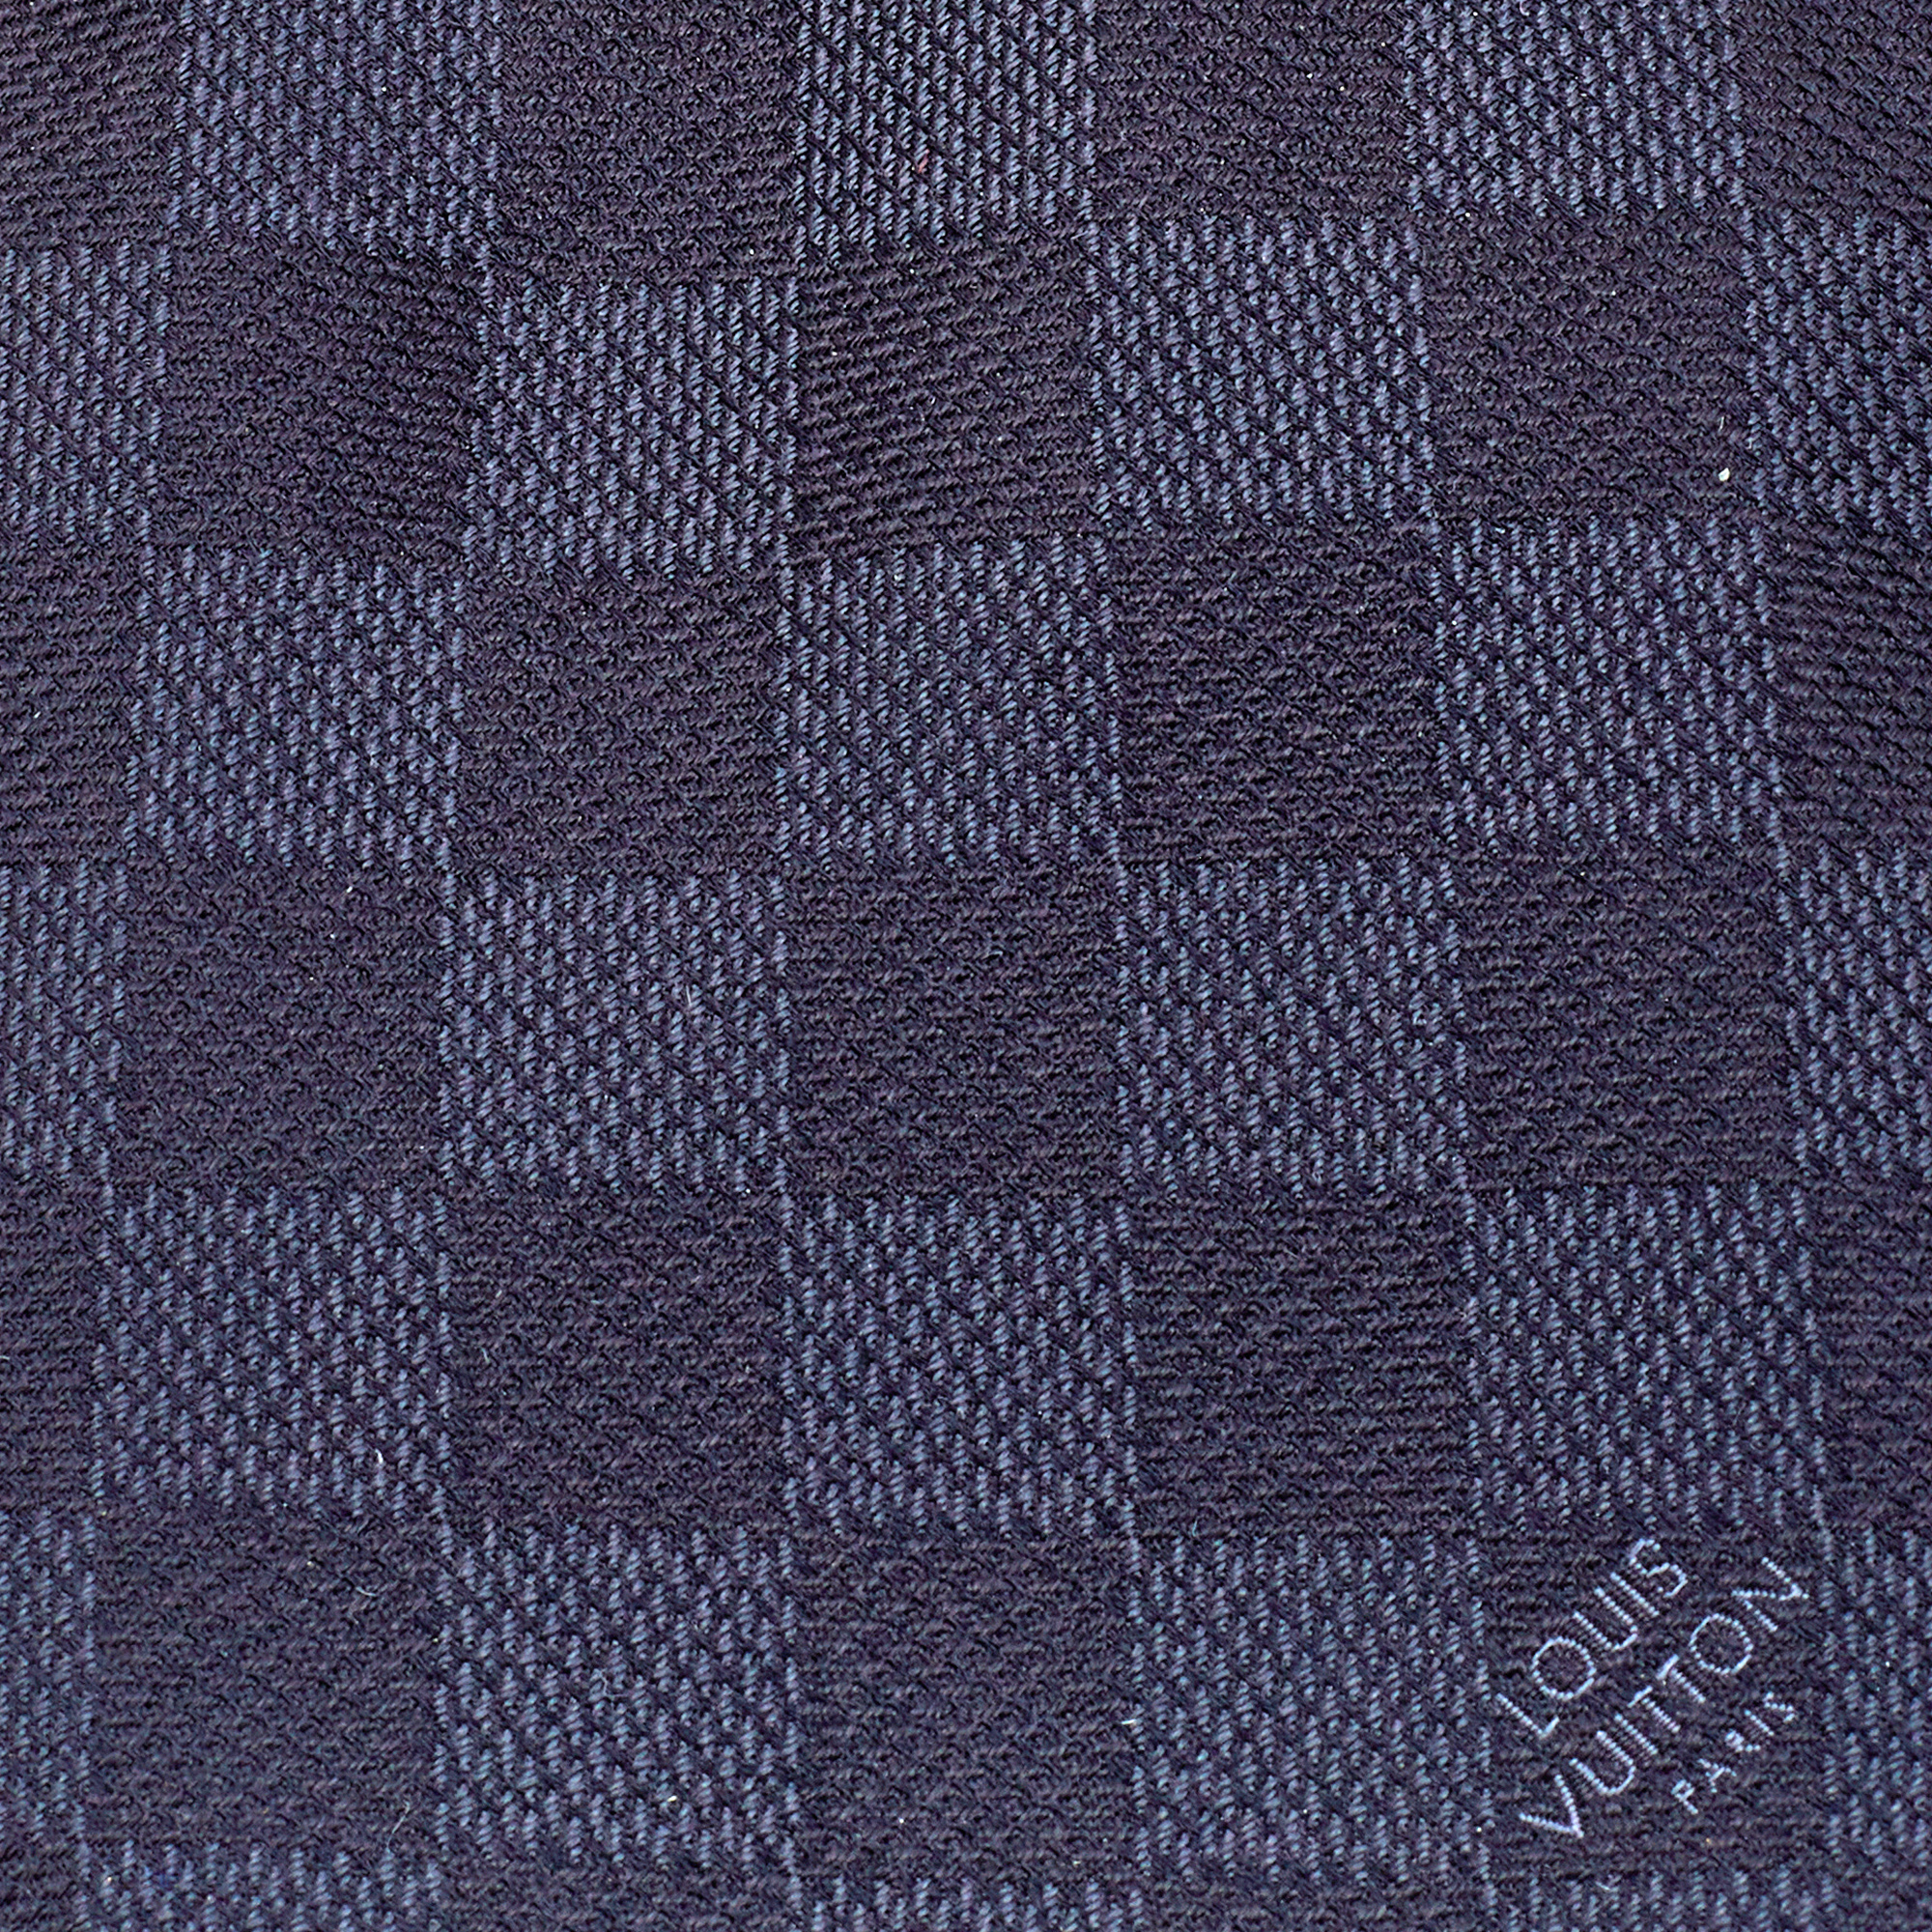 

Louis Vuitton Black Damier Ebene Pattern Silk Tie